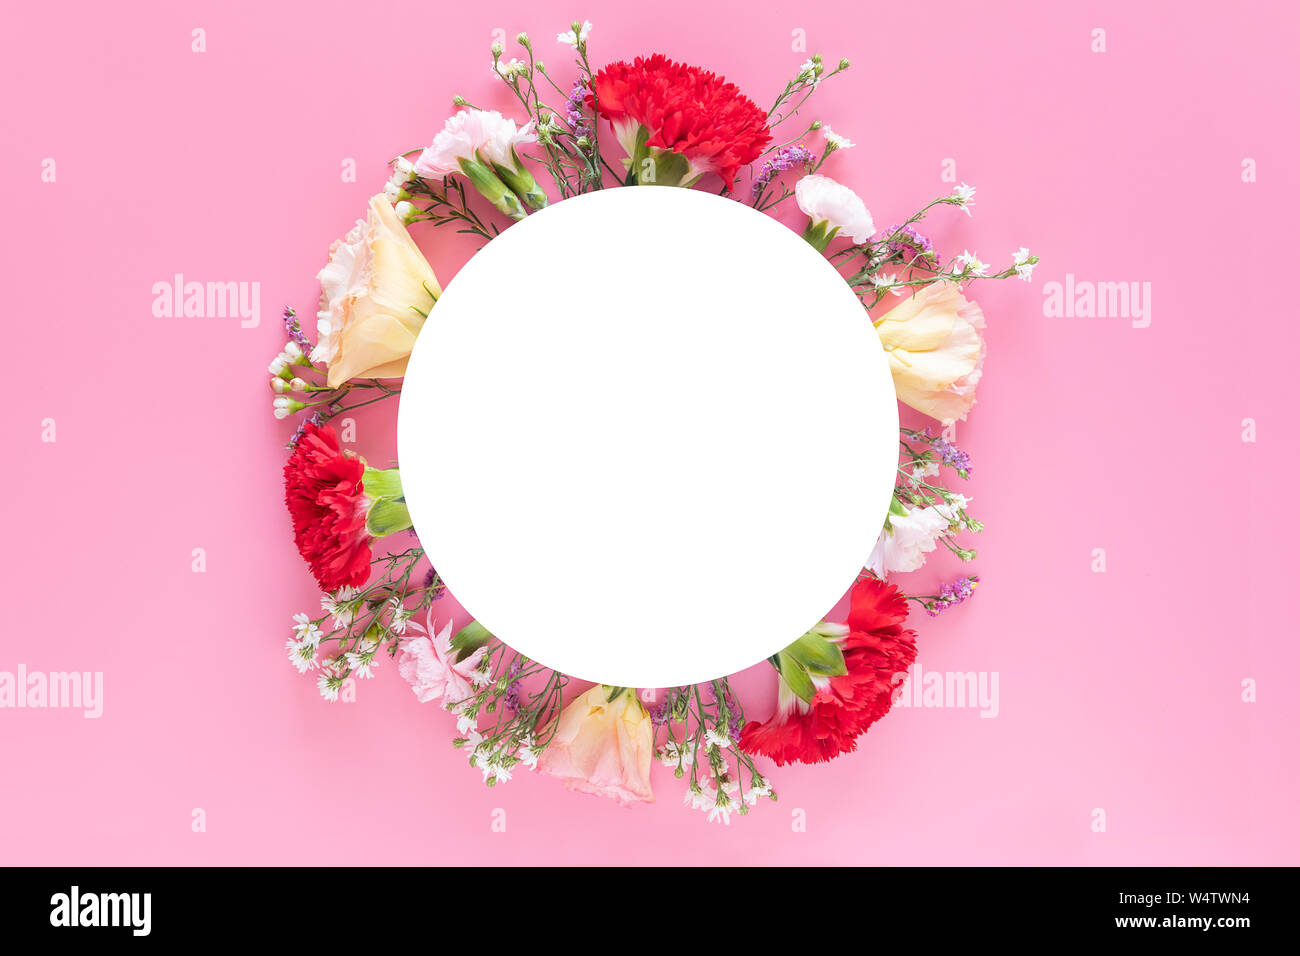 Kreative Gestaltung mit frischen bunten Frühling Blumen auf hellem rosa Hintergrund mit weißen Kreis banner Label. Hochzeit Einladung, Plakat oder Grüße Stockfoto